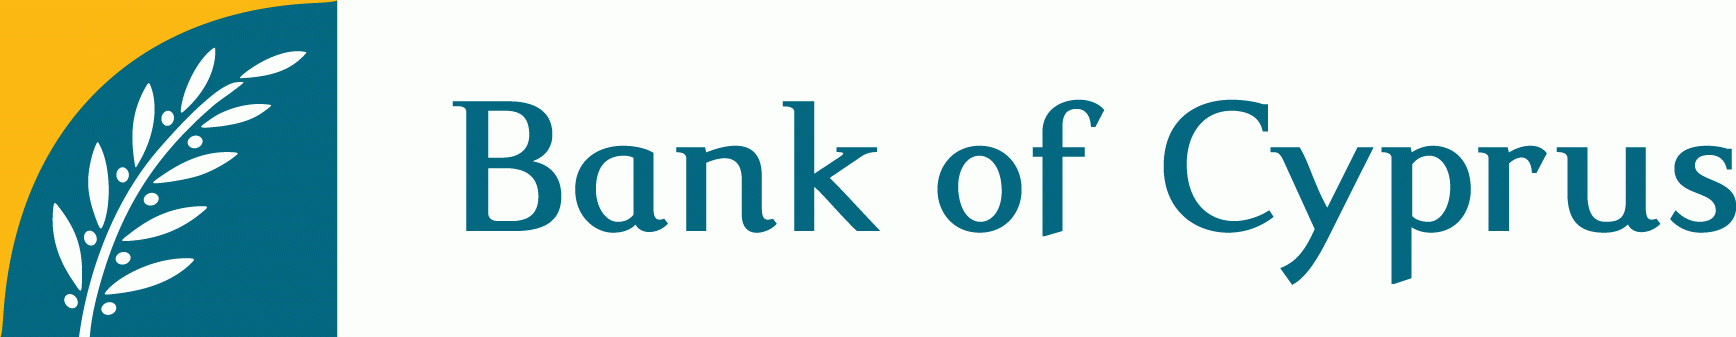 Bank Of Cyprus Uk